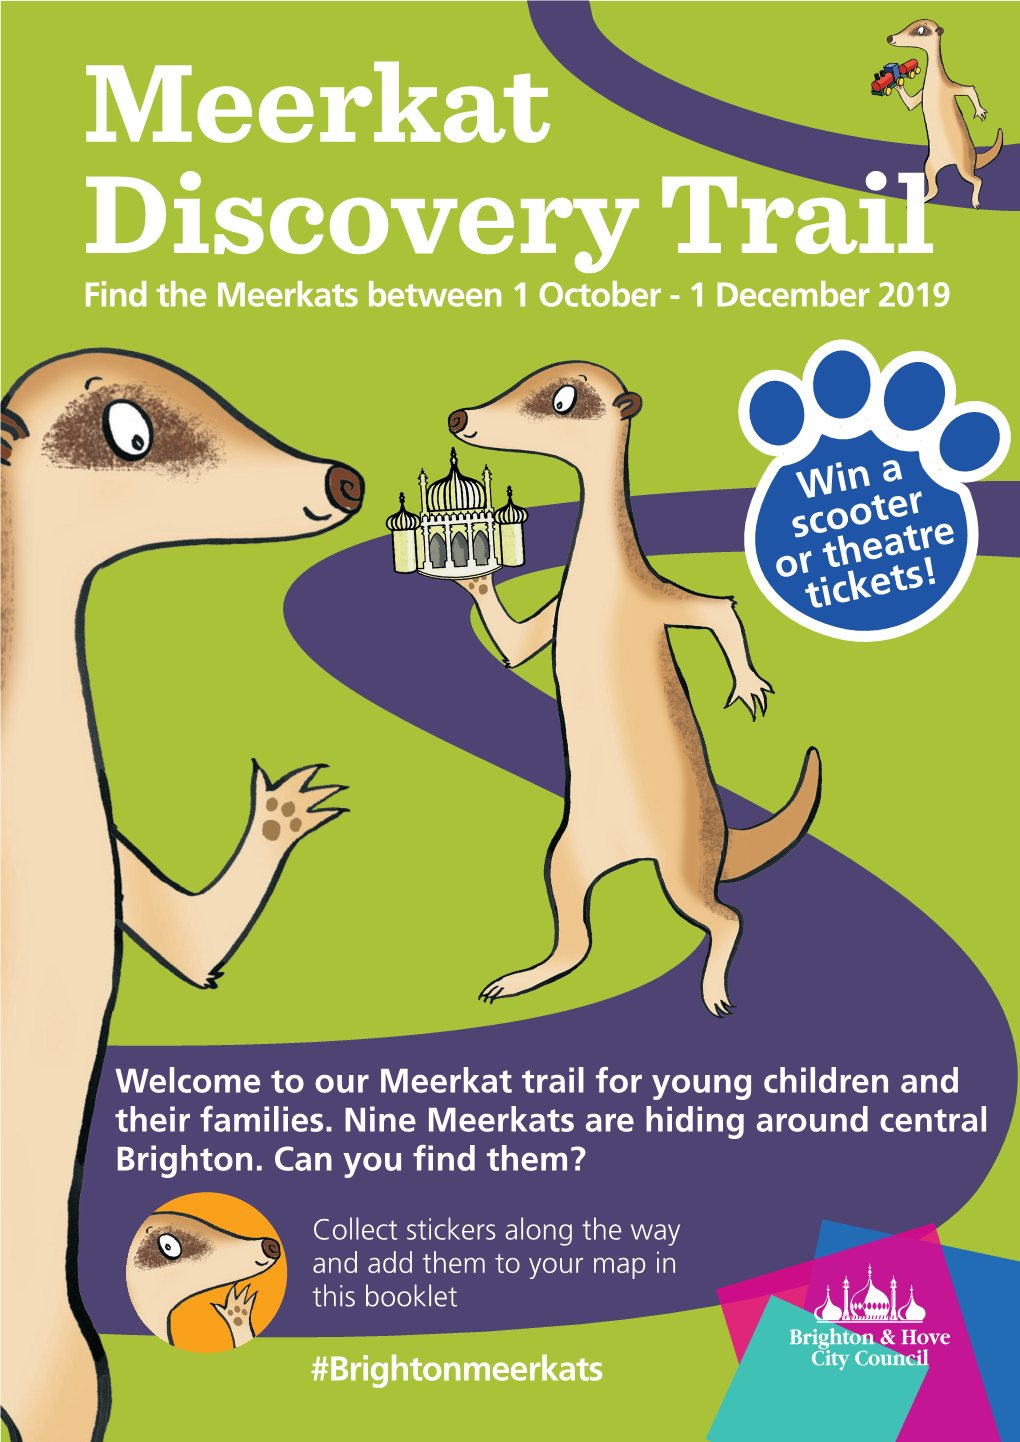 Meerkat Discovery Trail Find the Meerkats Between 1 October - 1 December 2019